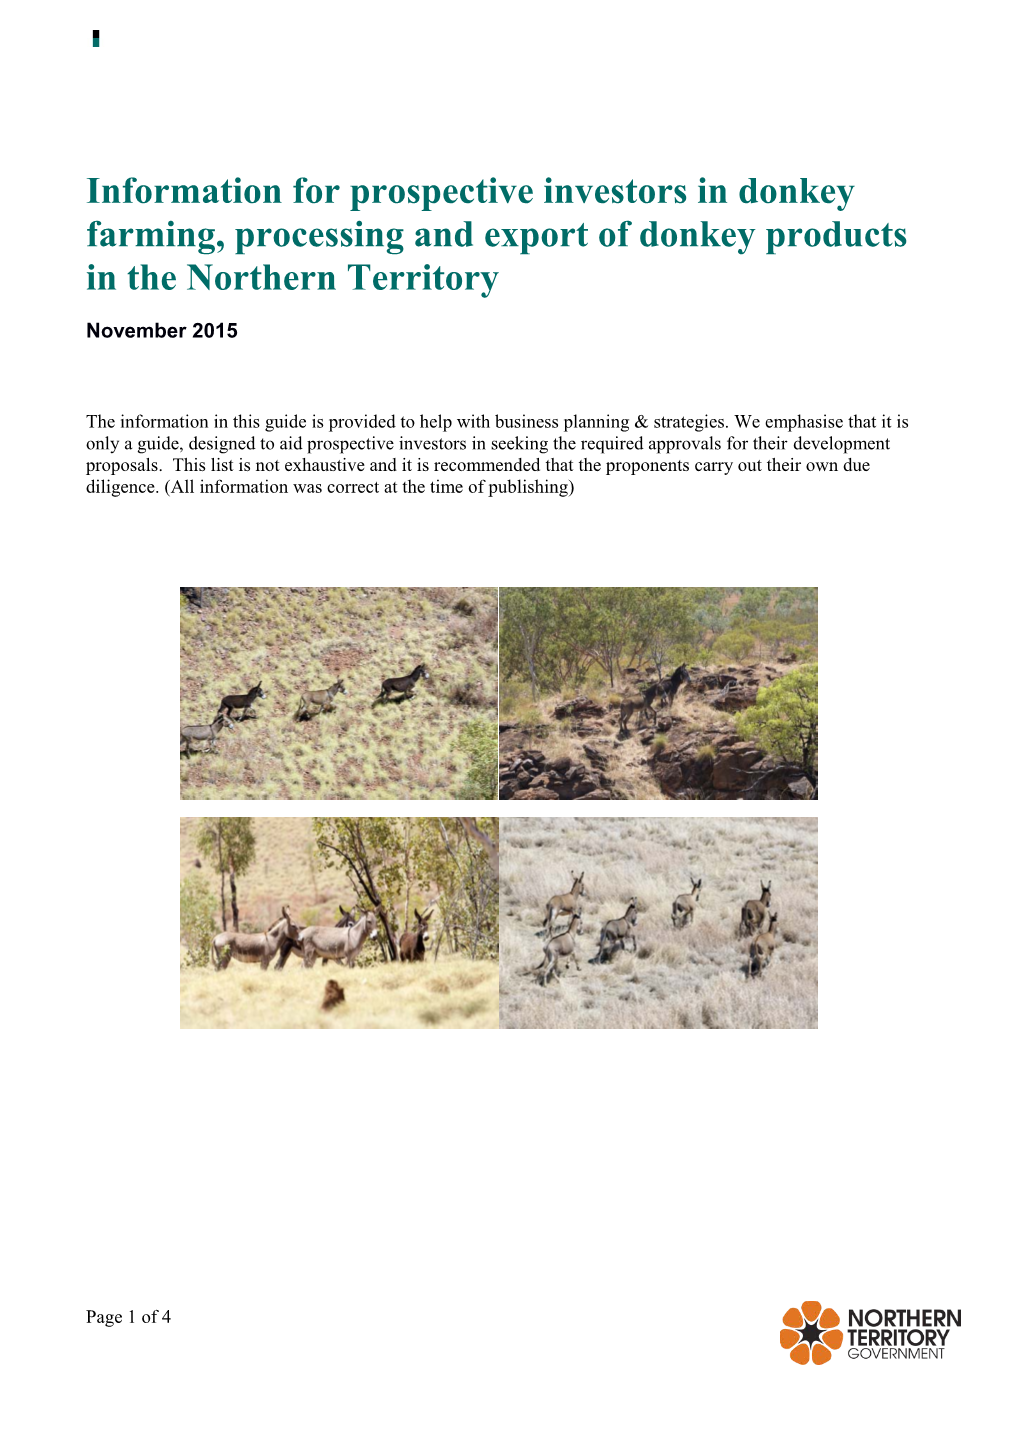 Donkey Investor Information Bulletin